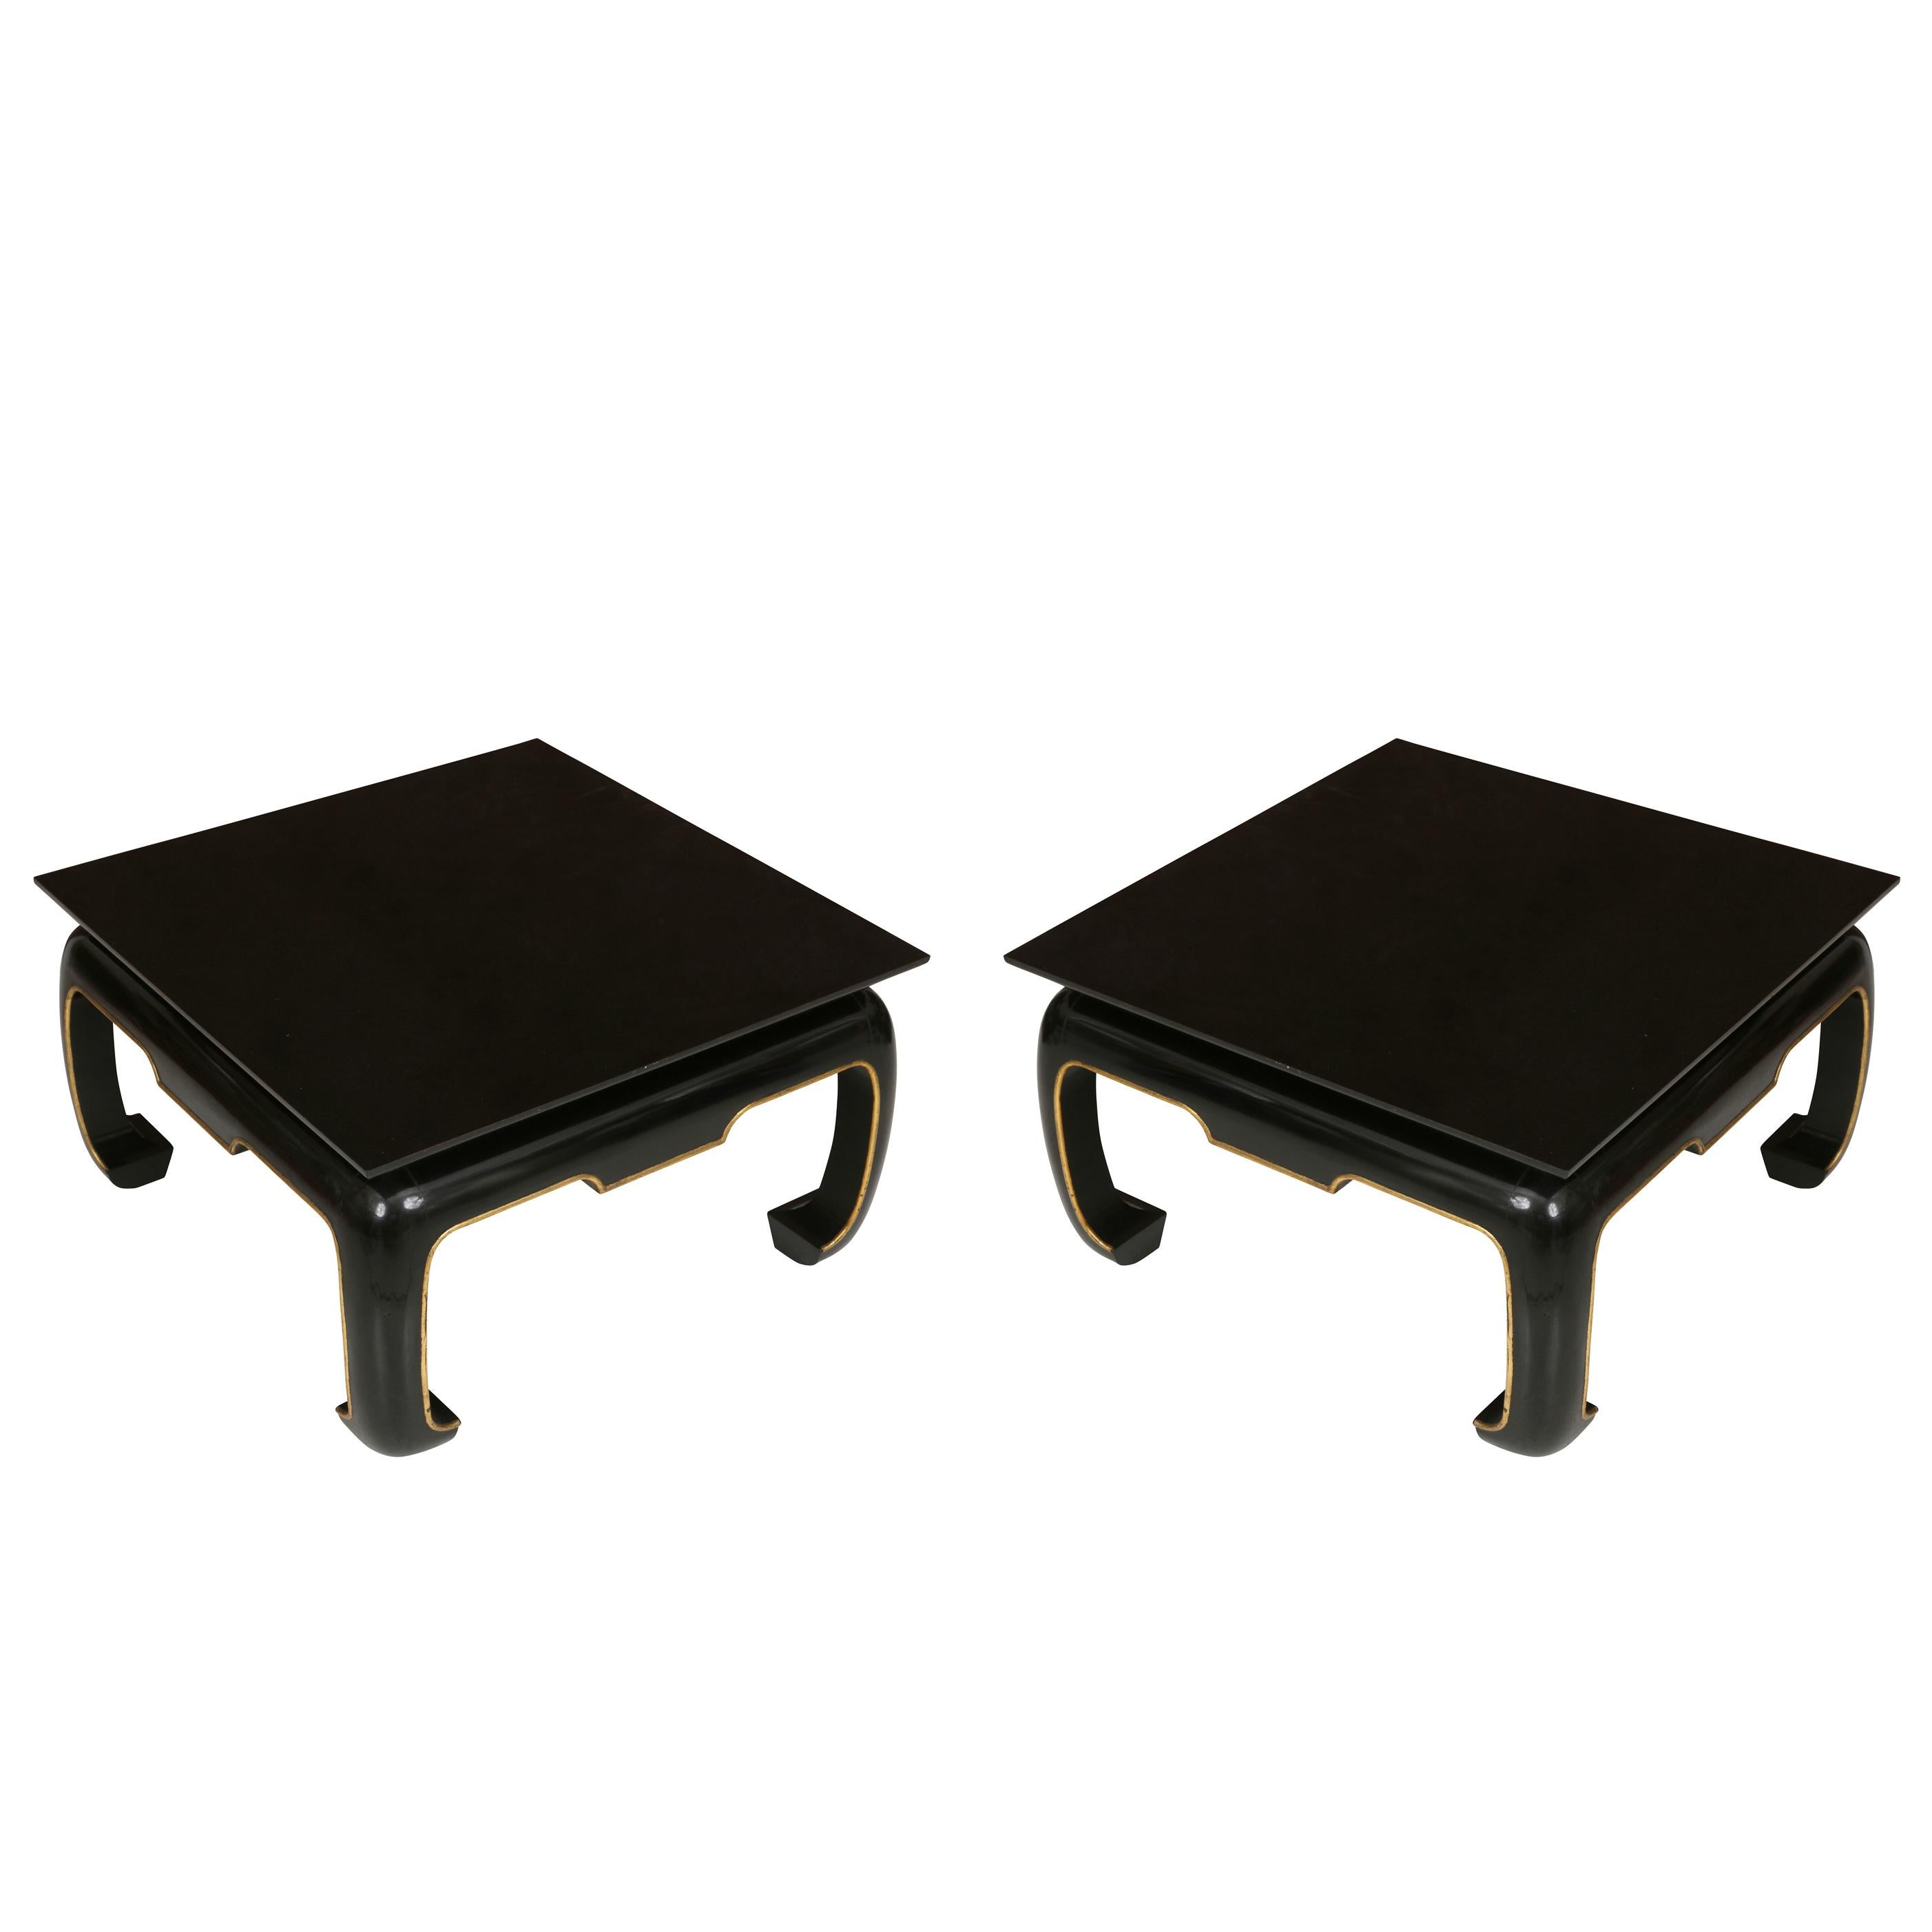 Une magnifique paire de tables basses carrées asiatiques, nouvellement laquées et refinies avec des détails en ming et dorés !